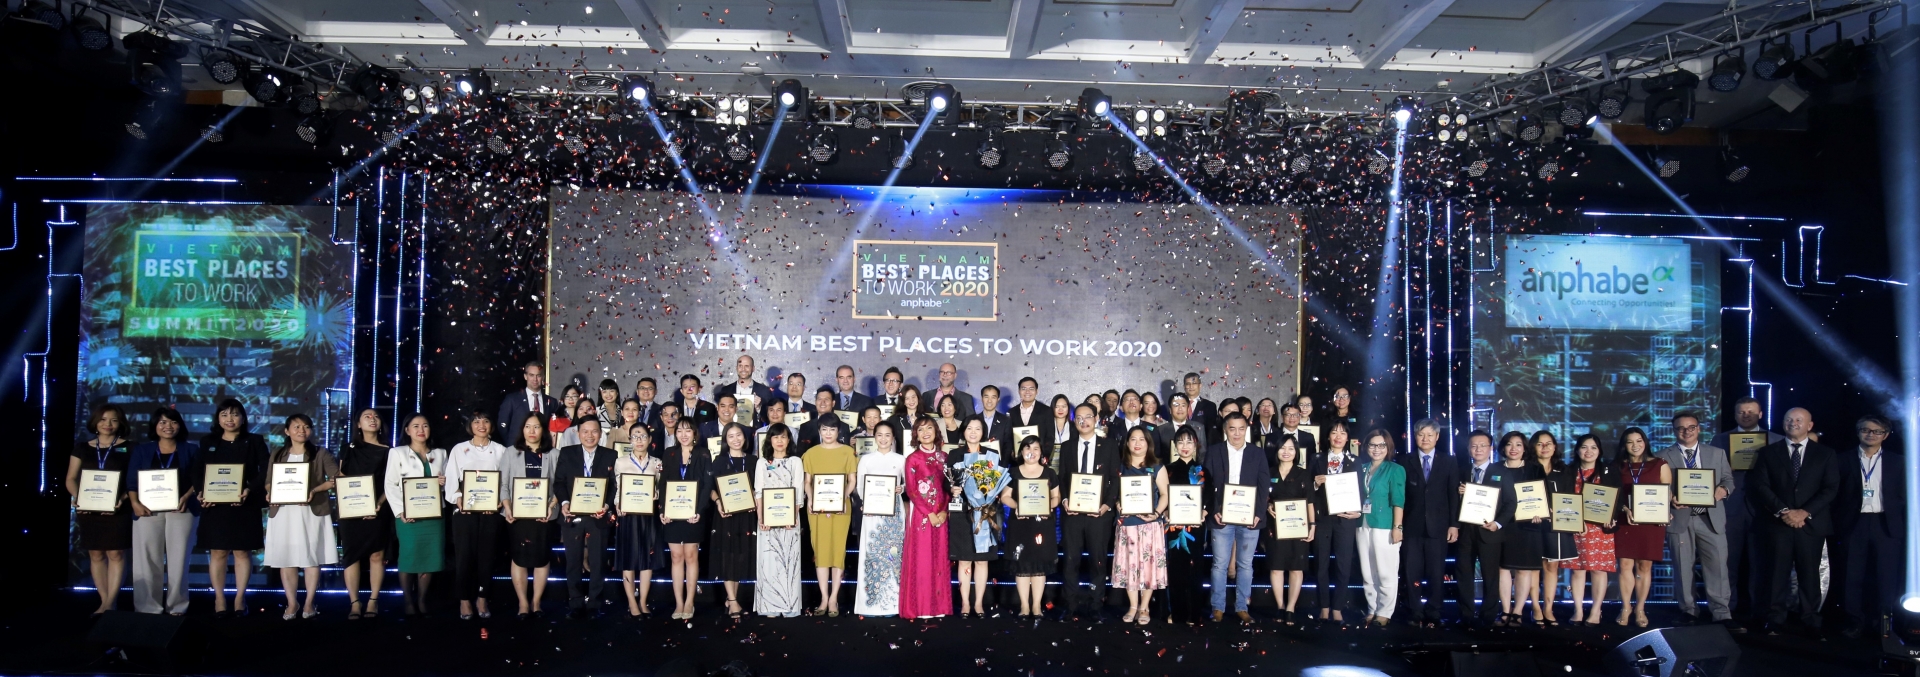 Vinamilk được bình chọn là “Nơi Làm Việc Tốt Nhất Việt Nam” 2020.